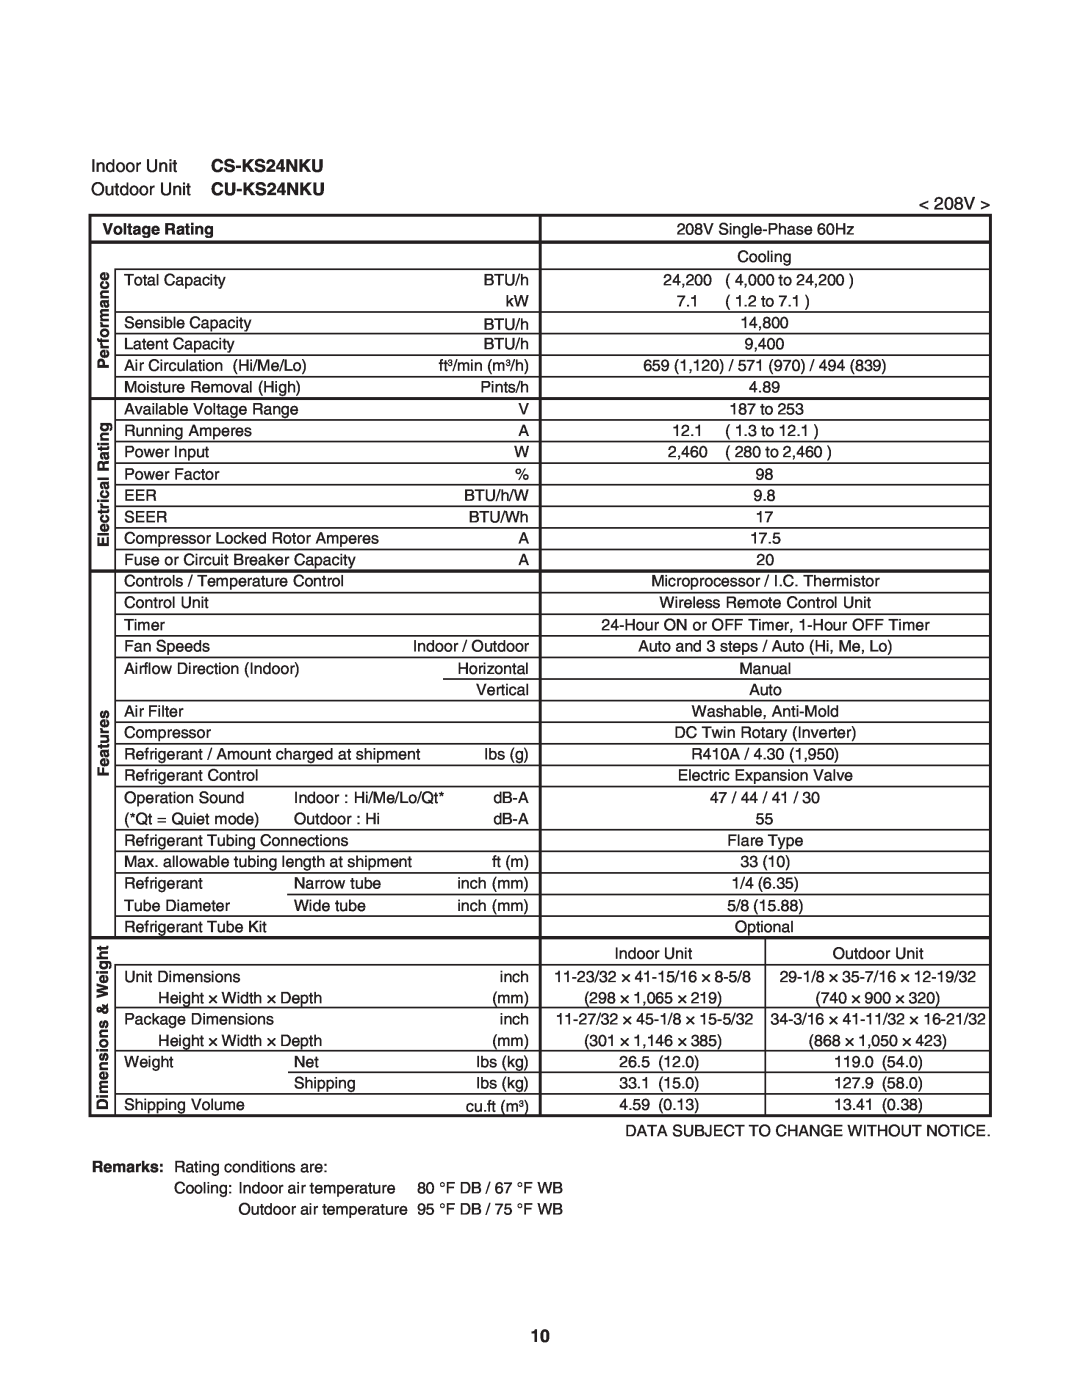 Panasonic CU-KS18NKU, CS-KS18NKU service manual CS-KS24NKU, CU-KS24NKU, Voltage Rating, ical, Electr 